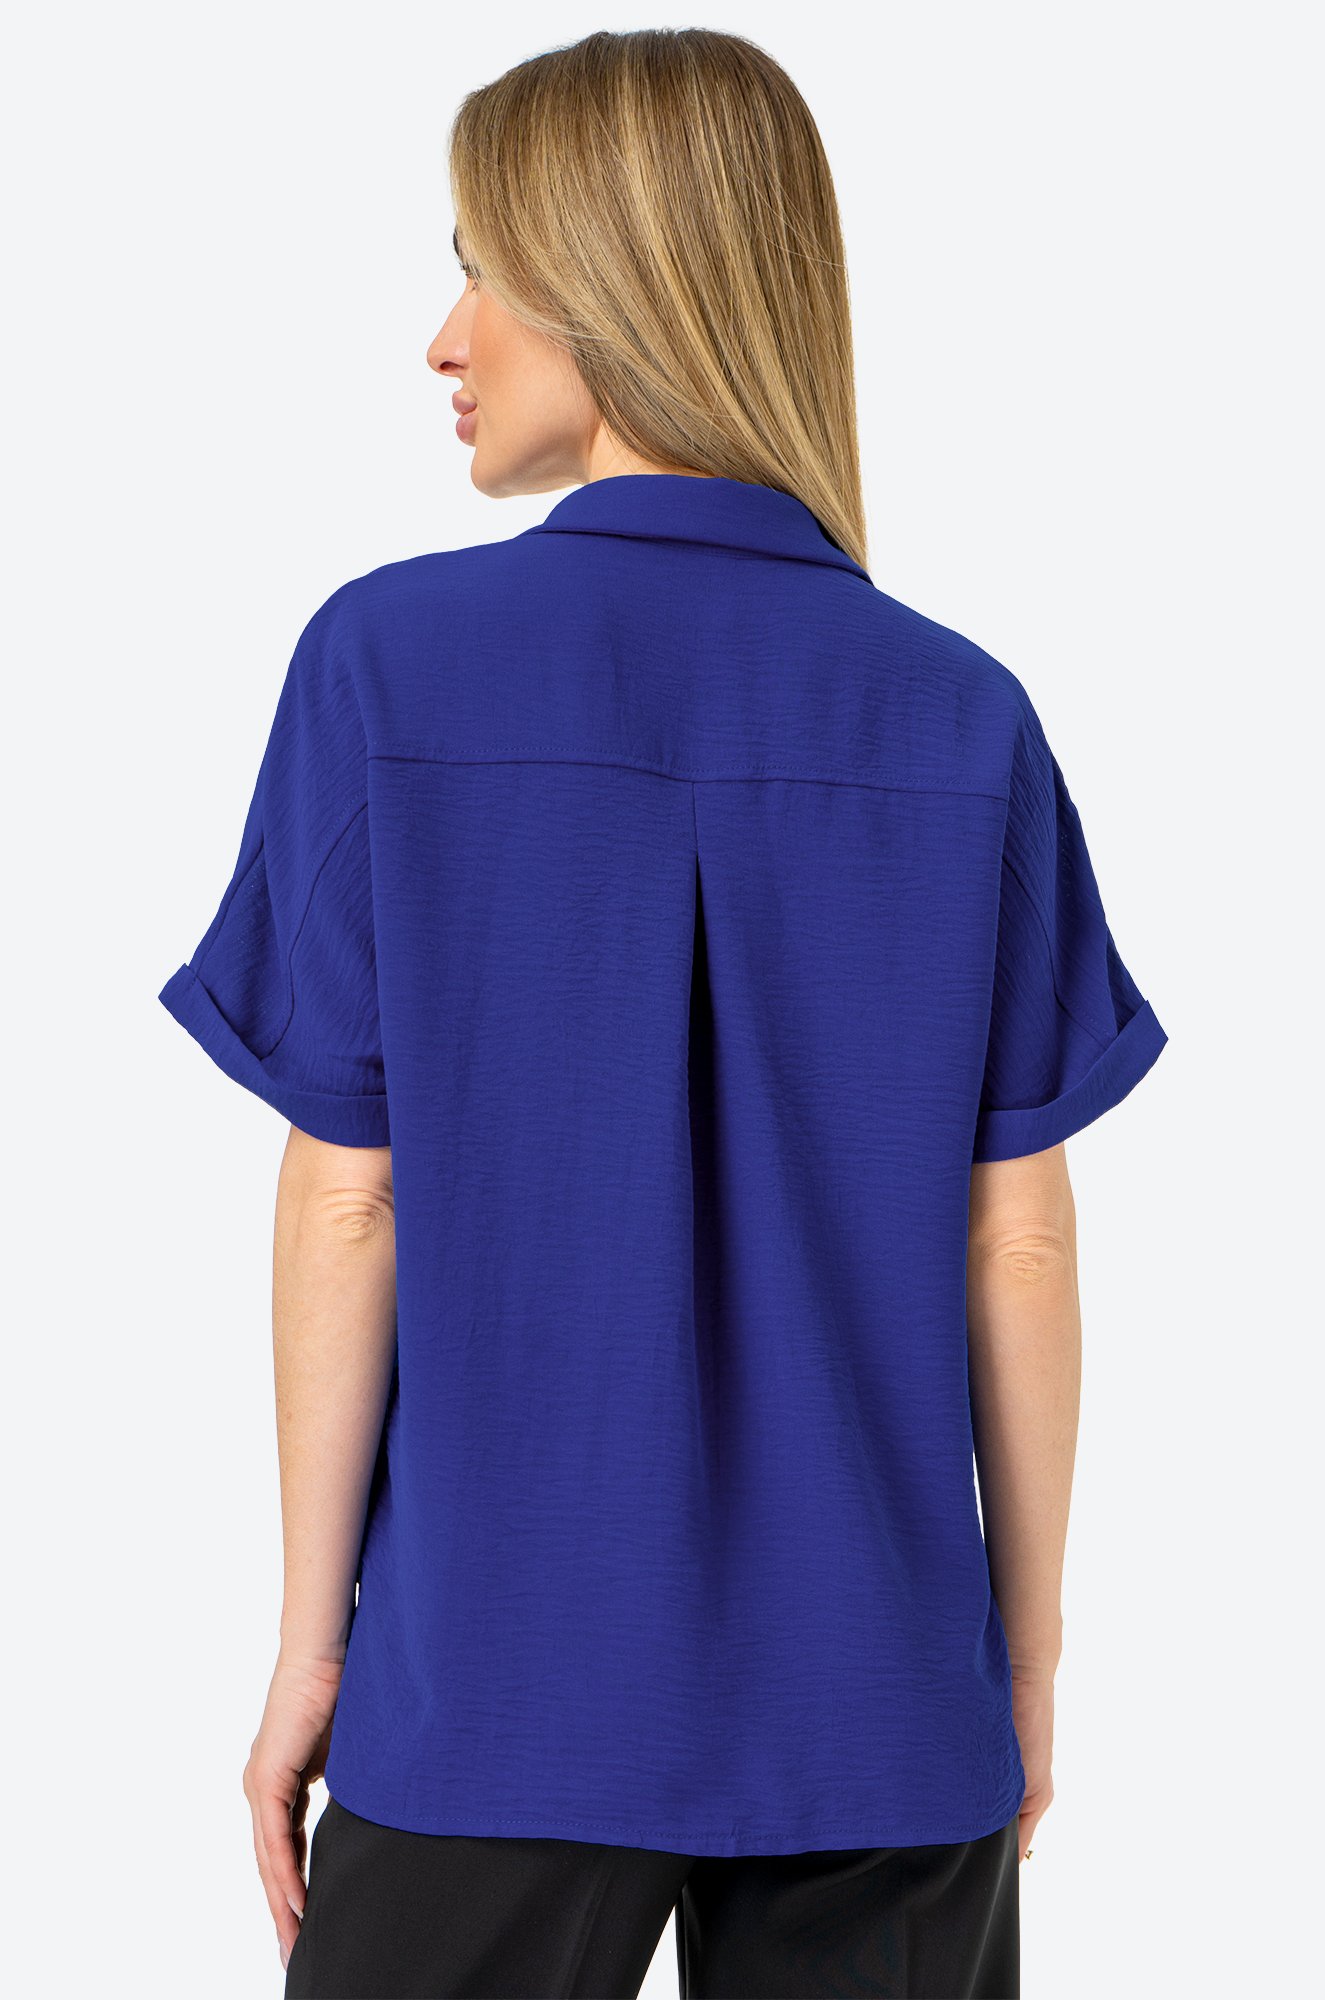 Женская рубашка с коротким рукавом из ткани-жатка Happy Fox